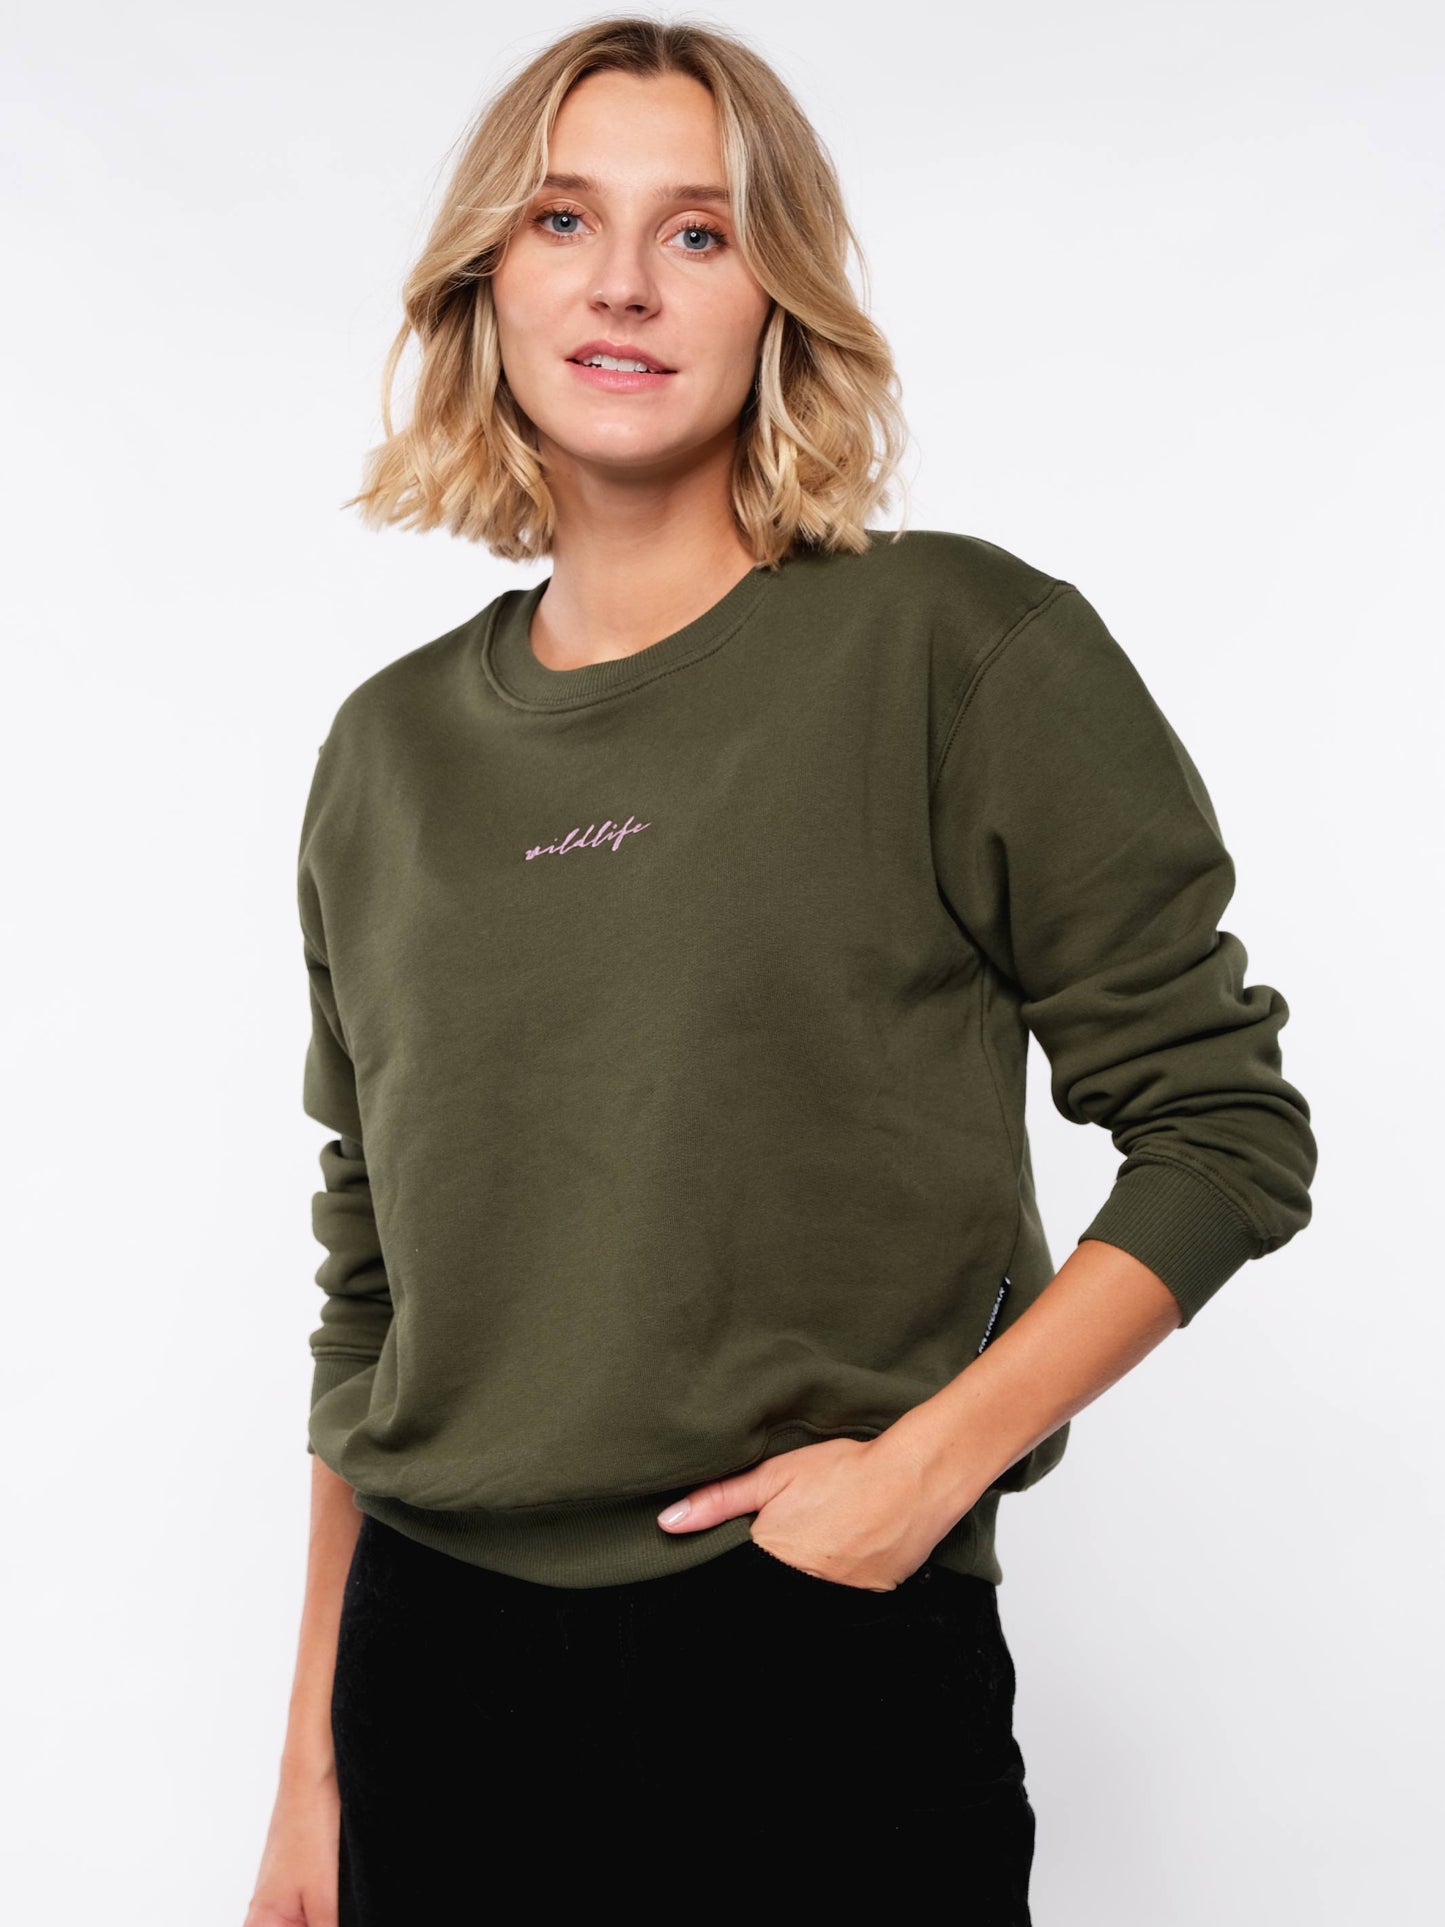 Damen Sweater WILDLEBEN ZÄHLT (grün)